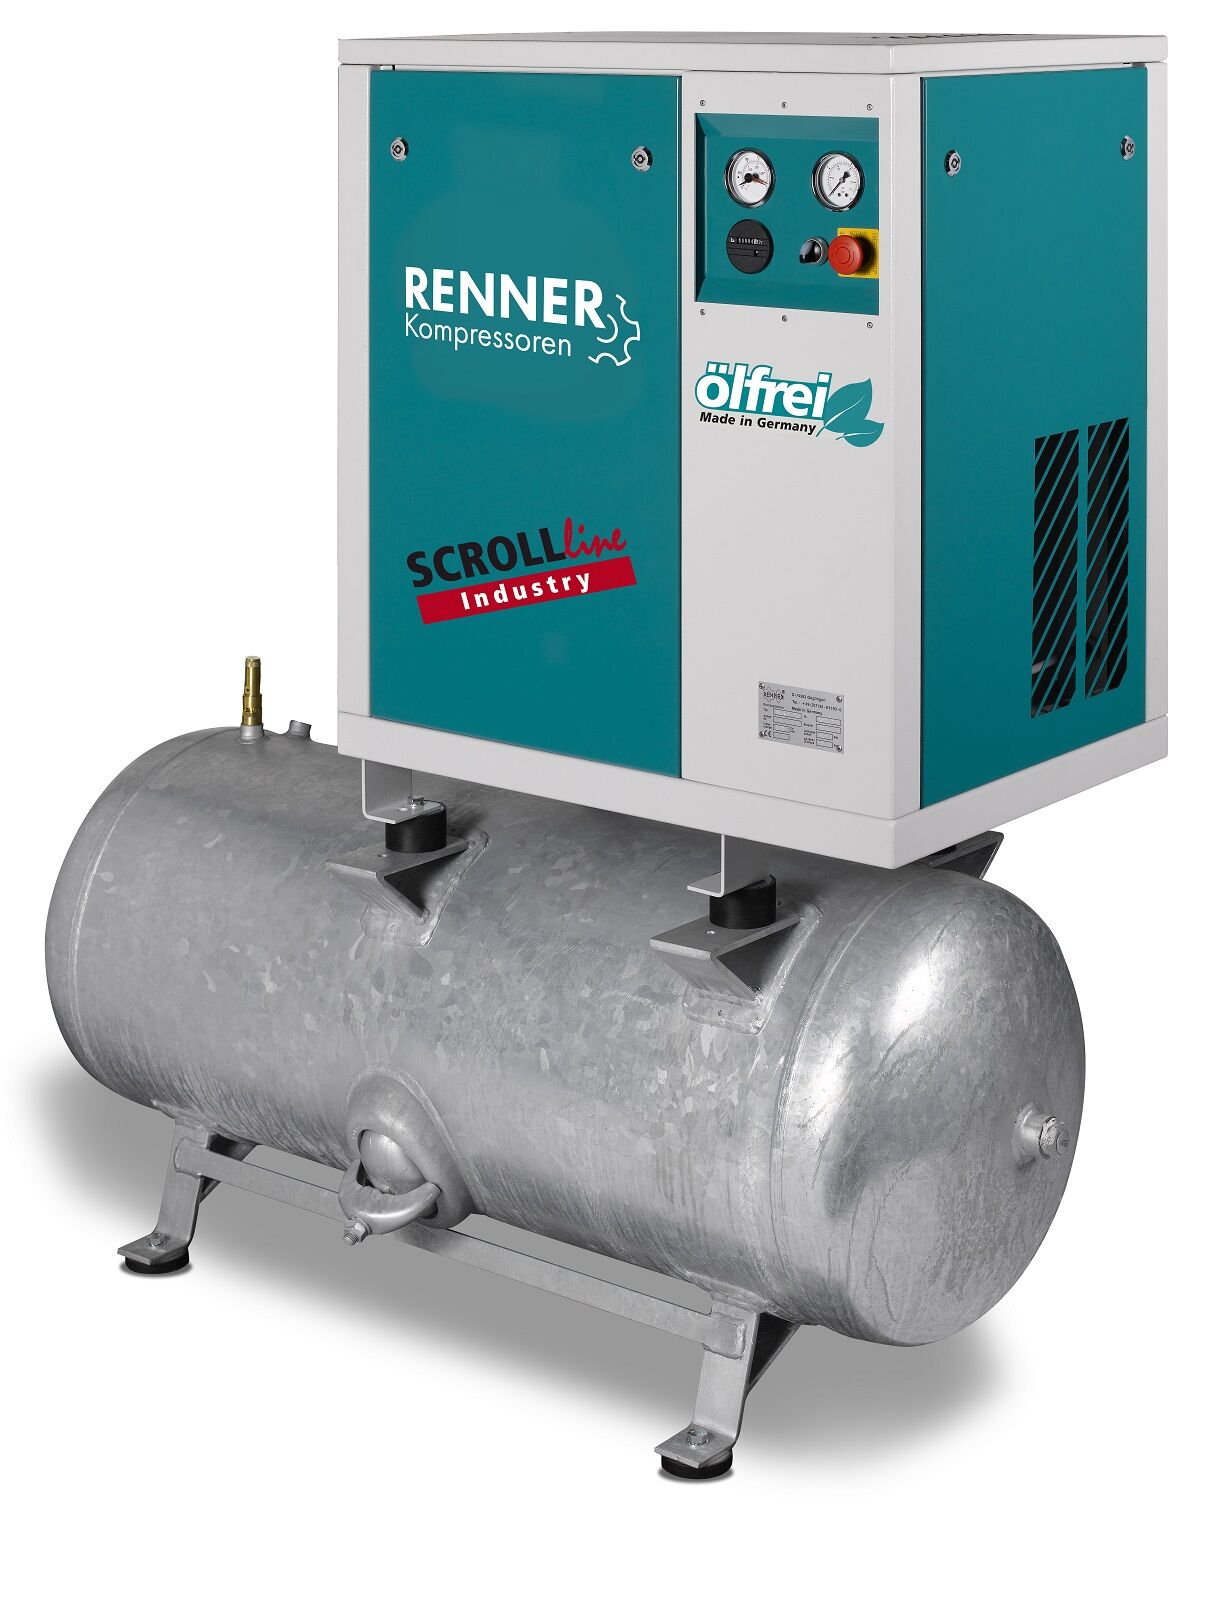 RENNER-Kompressor SLD-I 5,5 auf 250 Liter Druckbehälter - Industry ölfreier Scrollkompressor